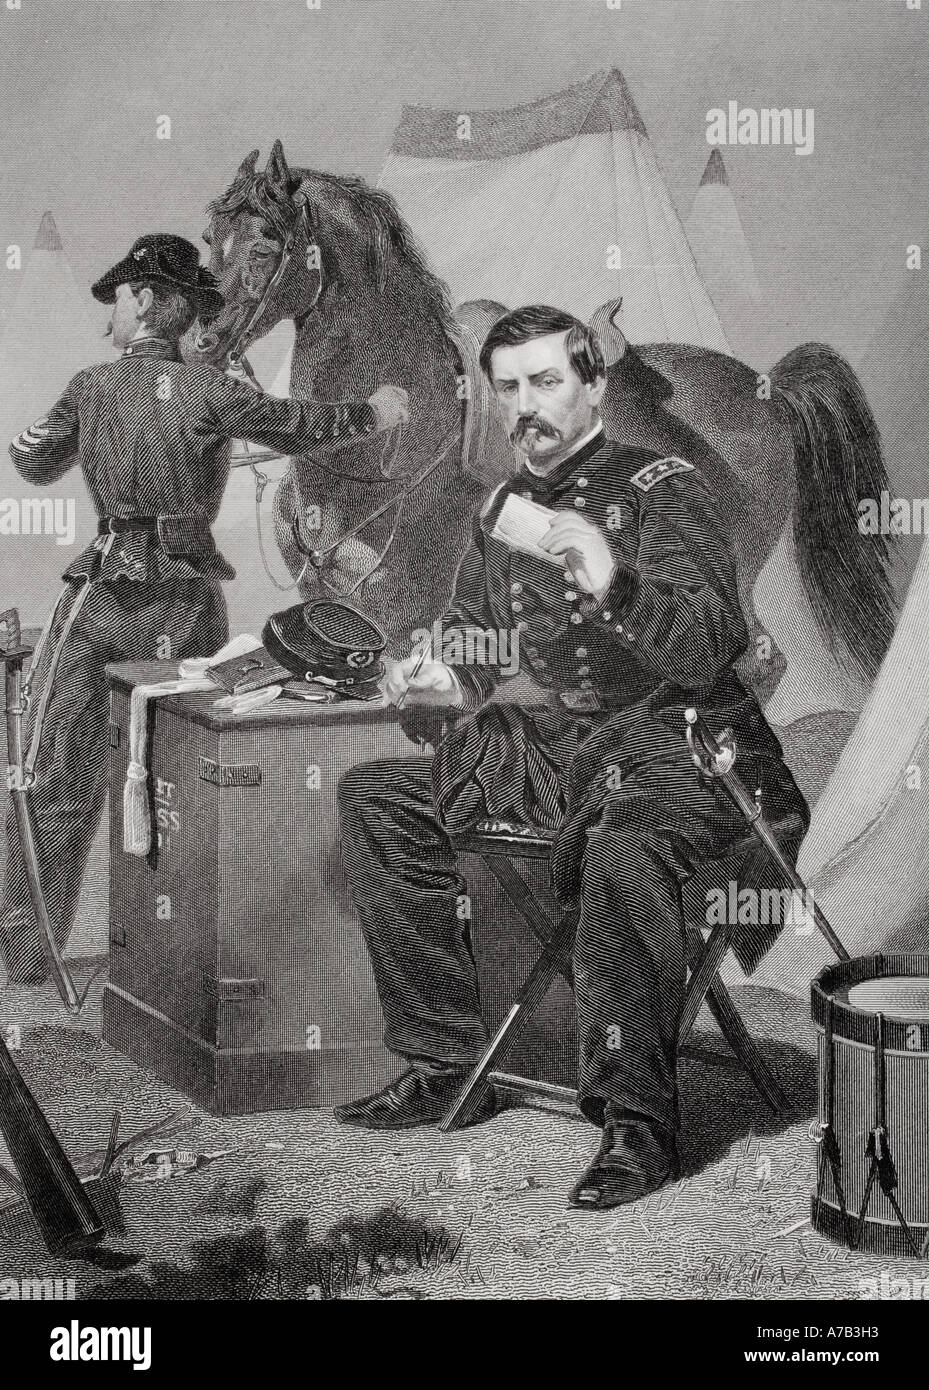 George Brinton McClellan 1826 1885 soldato americano, ingegnere civile, railroad executive, uomo politico e generale dell'Unione durante la Guerra Civile Americana. Foto Stock